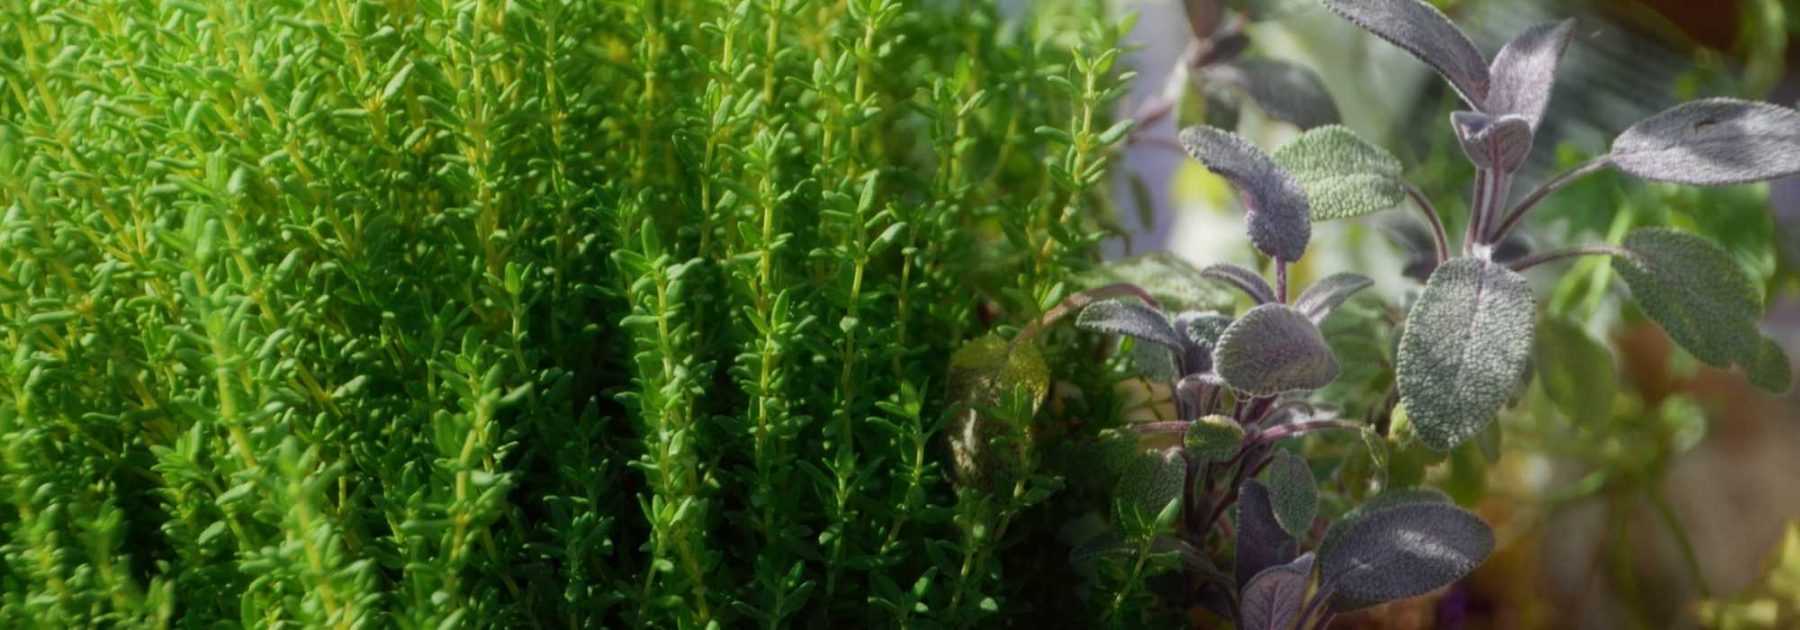 Des herbes aromatiques à chaque repas - Alternative Santé